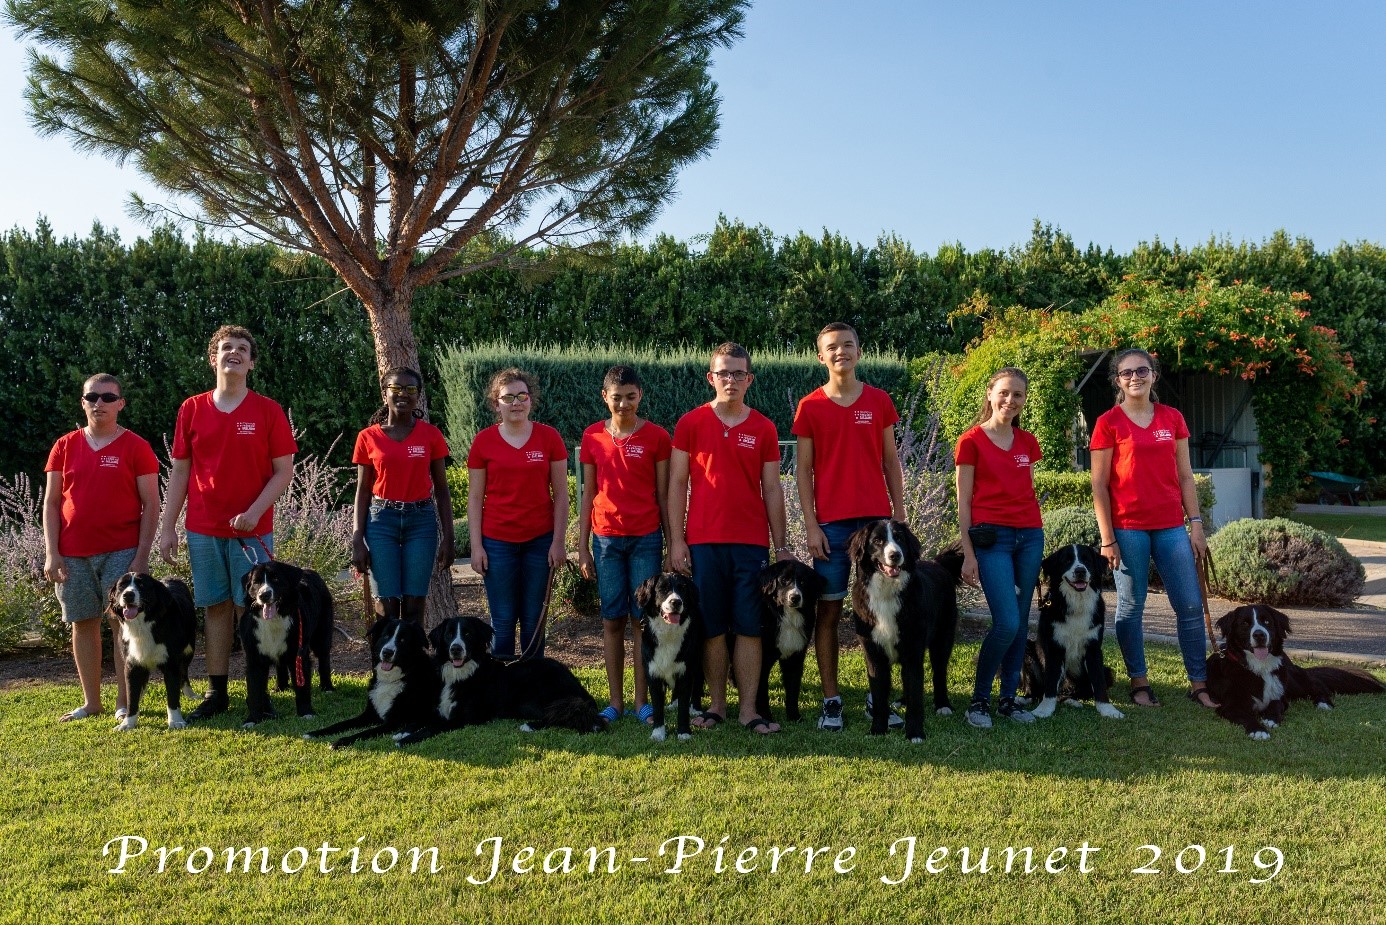 Photo de la promotion Jean-Pierre Jeunet 2019 - des jeunes souriants, chacun accompagné de son chien